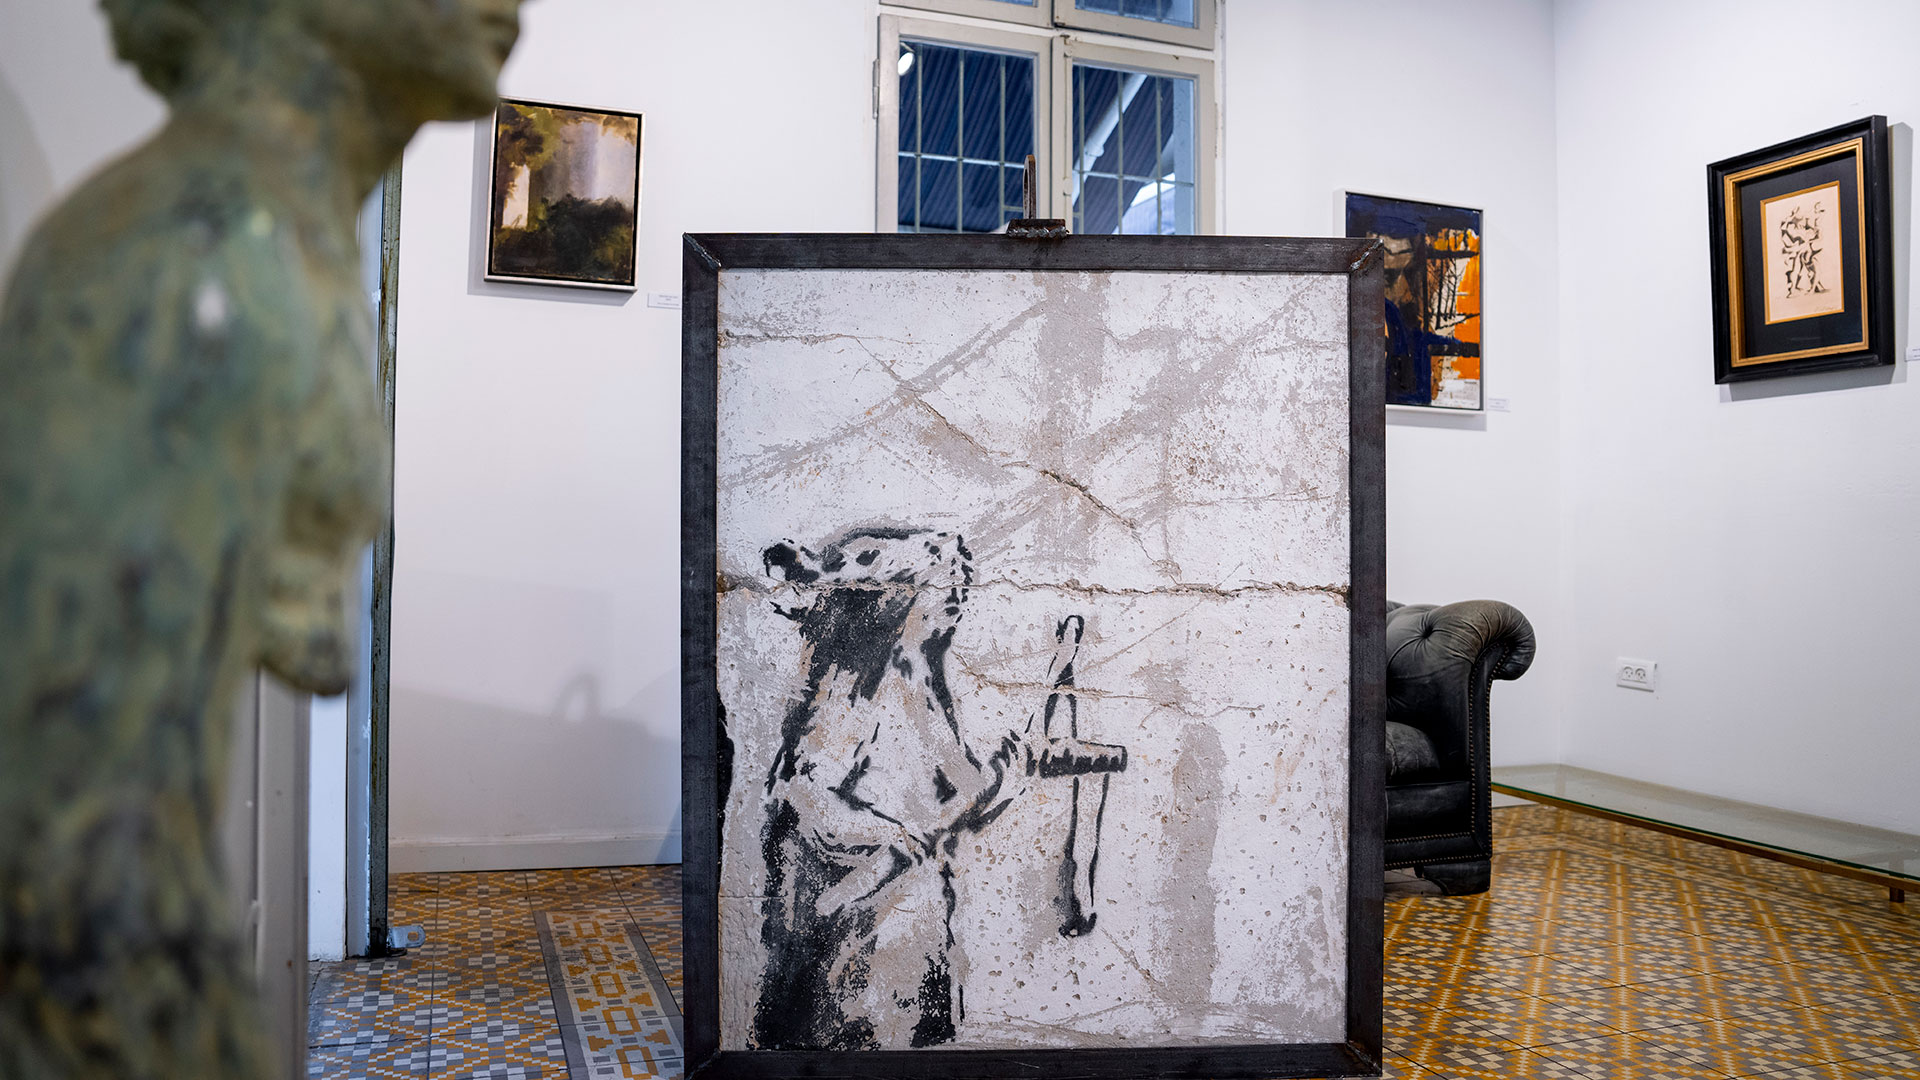 Banksyjevo delo na ogled v Tel Avivu (AP/Oded Balilty)